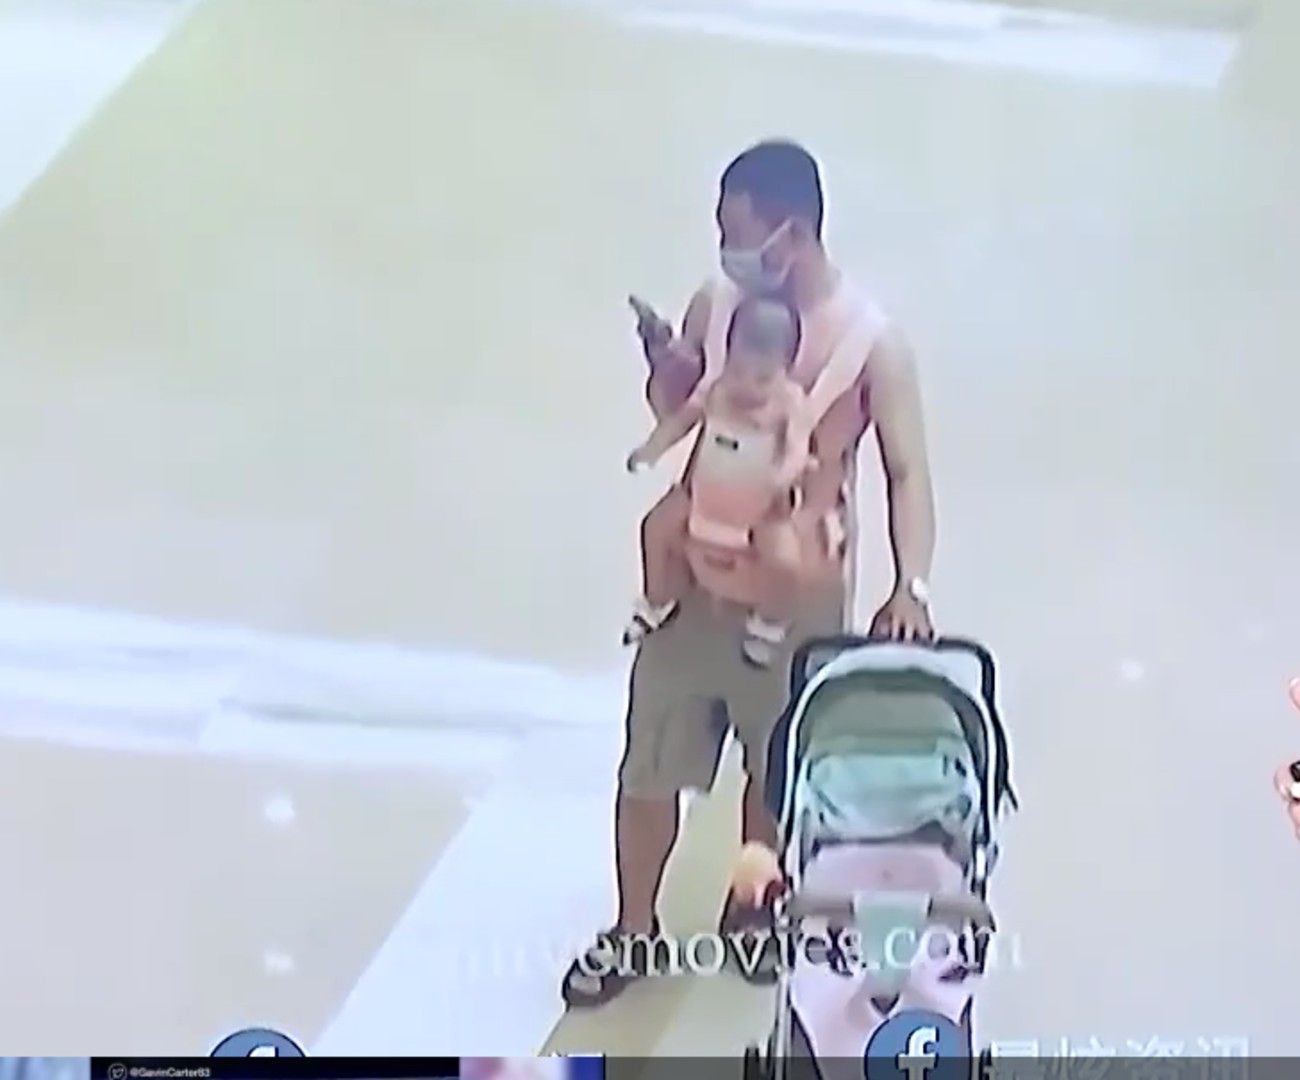 VÍDEO: Un padre despistado pierde a su hijo por culpa del móvil